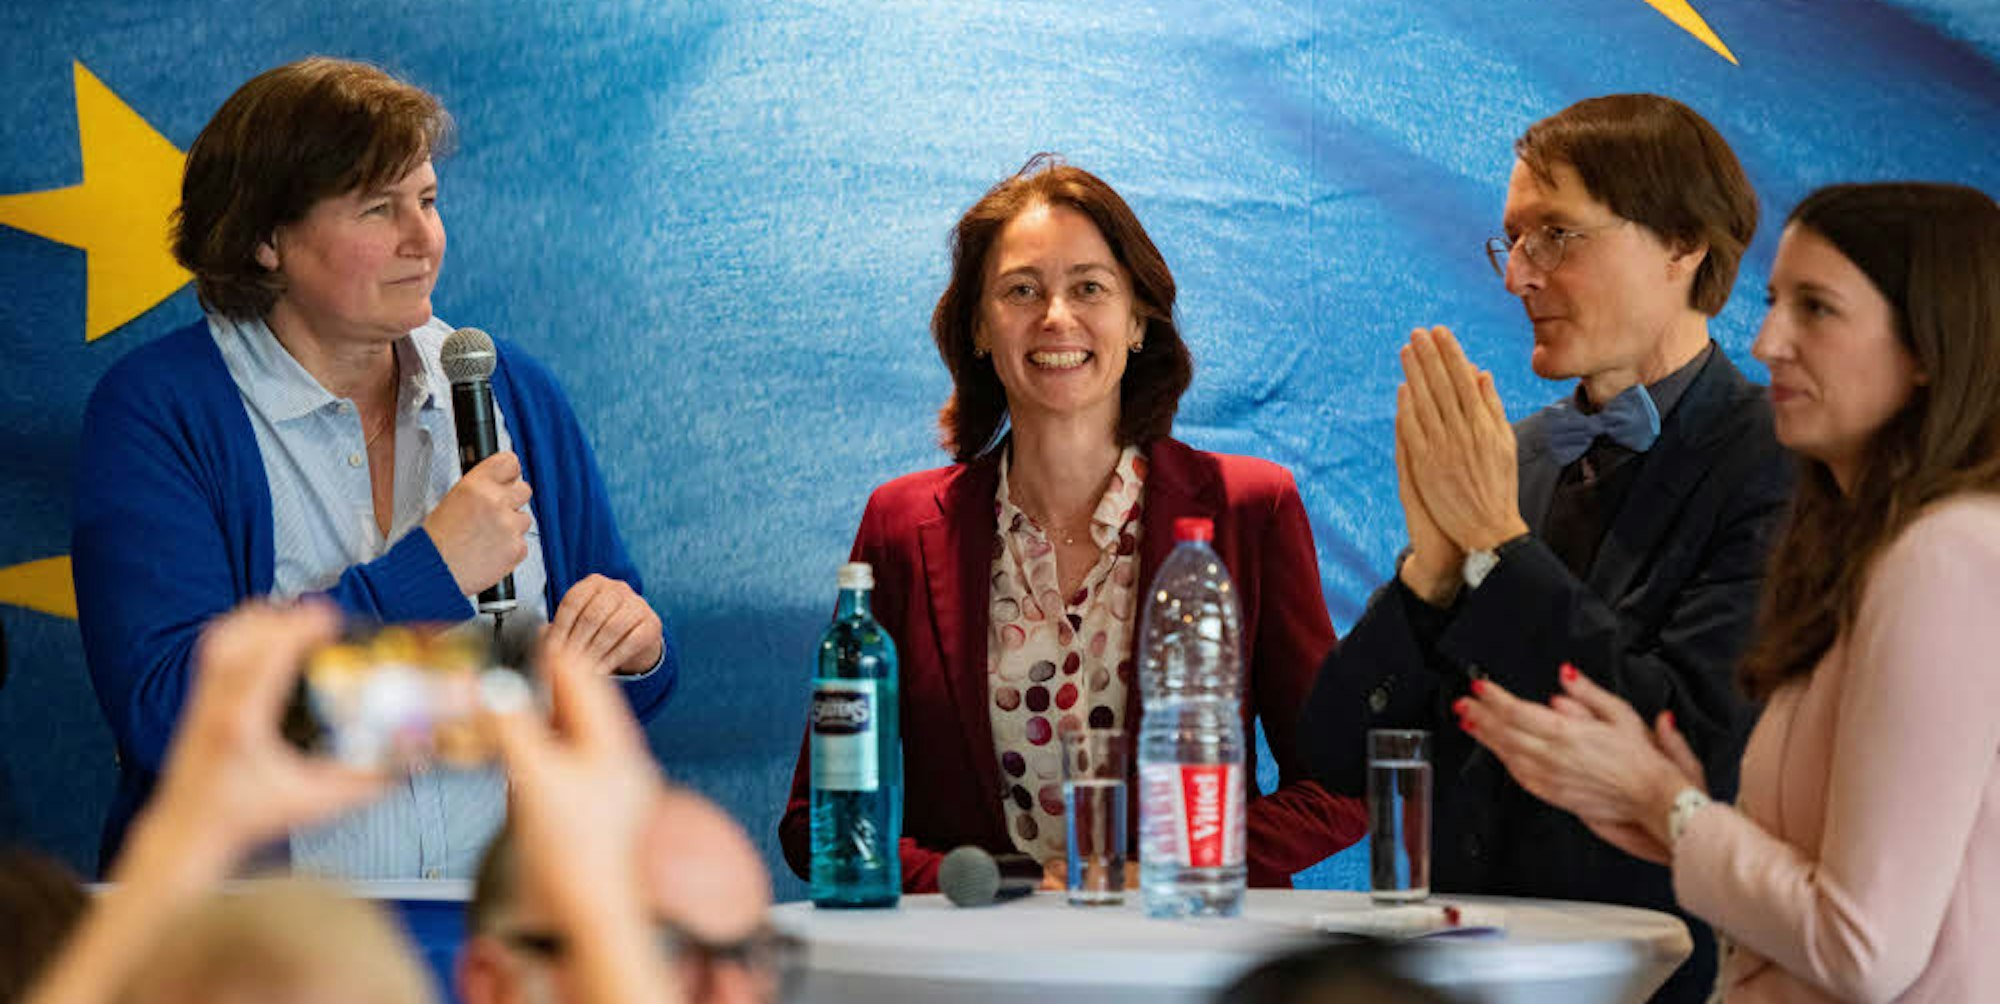 Applaus für Katharina Barley, Spitzenkandidatin der SPD bei der Europa-Wahl, von Christiane Jäger (l.) und Karl Lauterbach (r.).